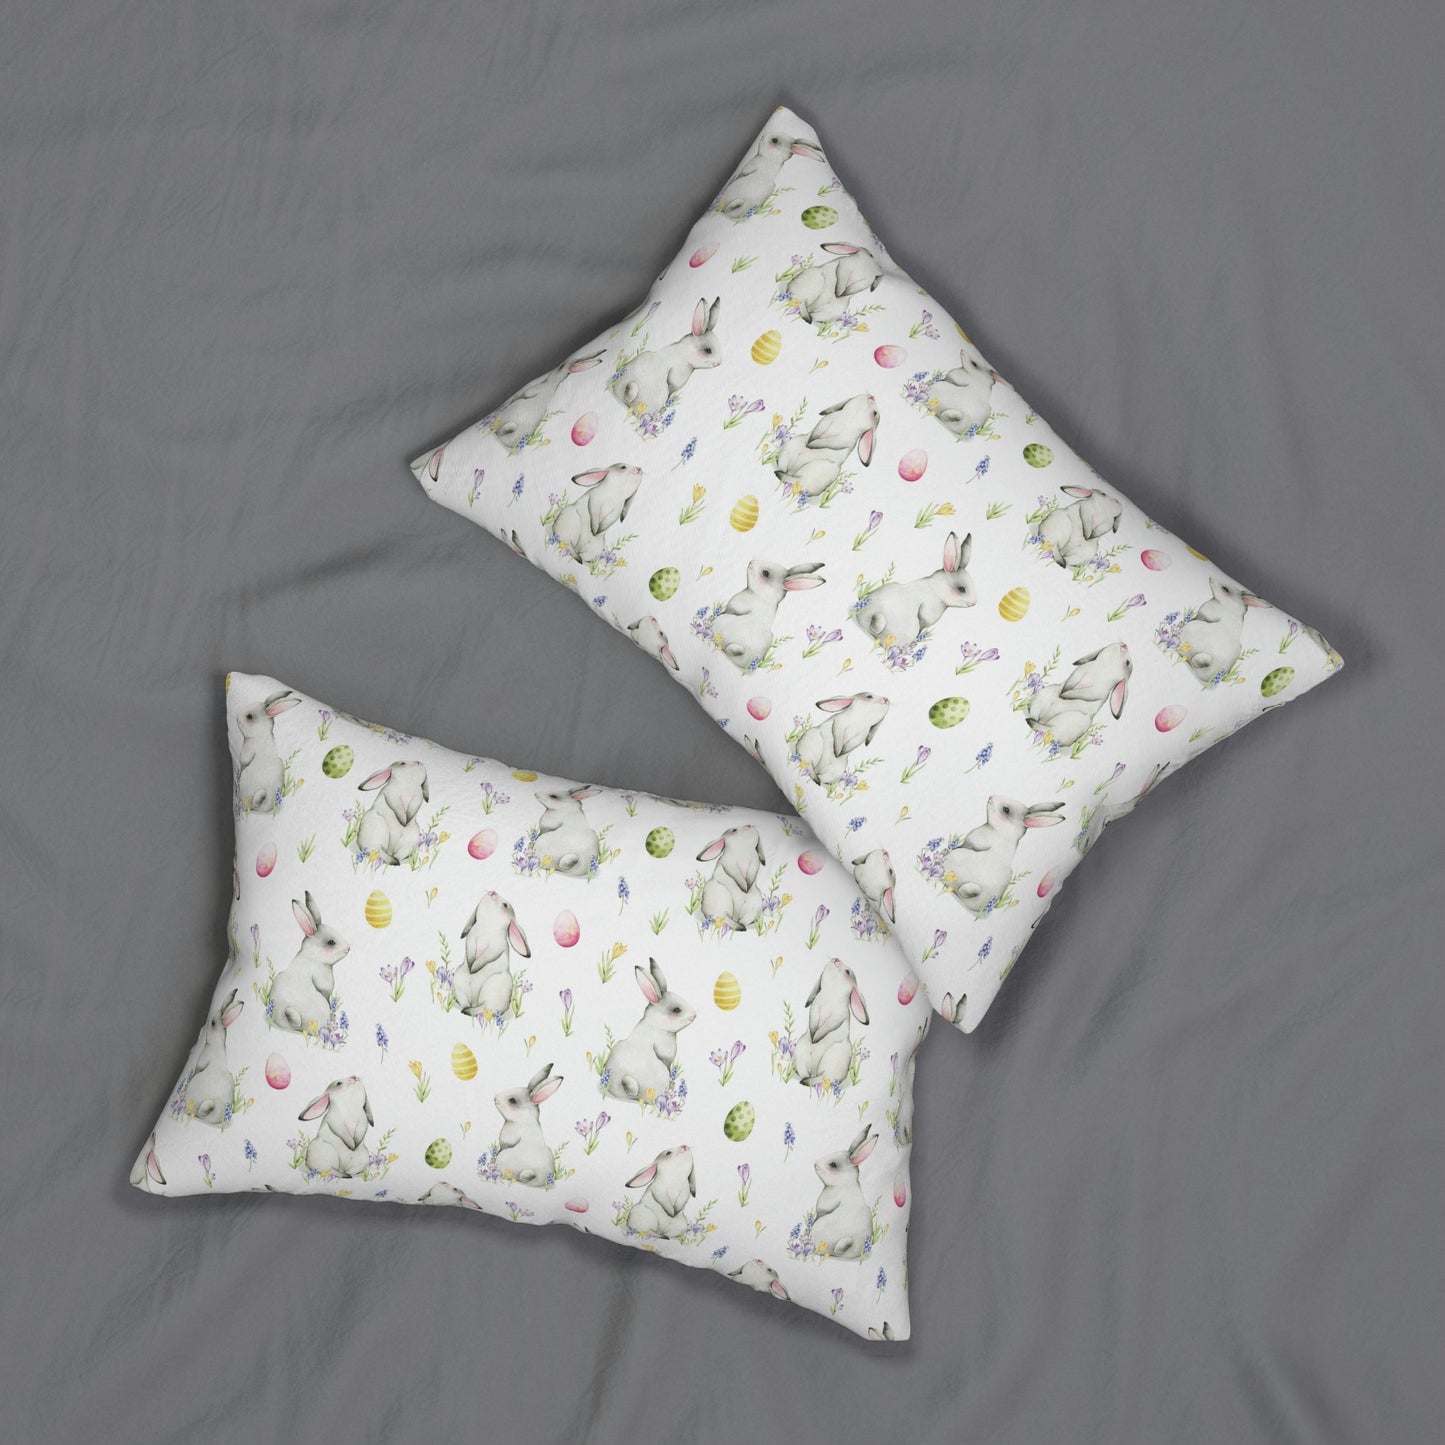 Cottontail Bunnies and Eggs Spun Polyester Lumbar Pillow